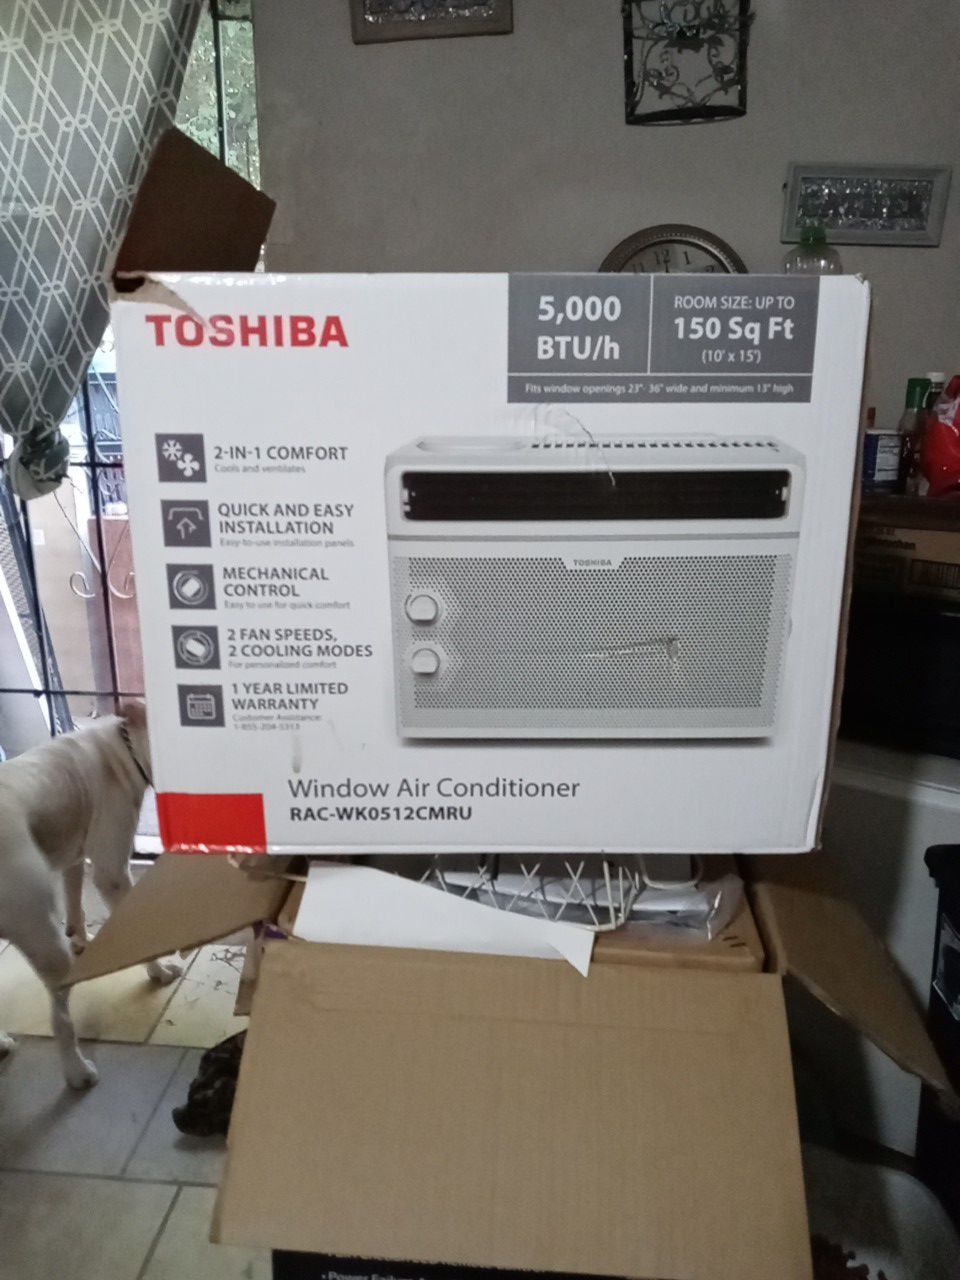 Toshiba AC unit for window